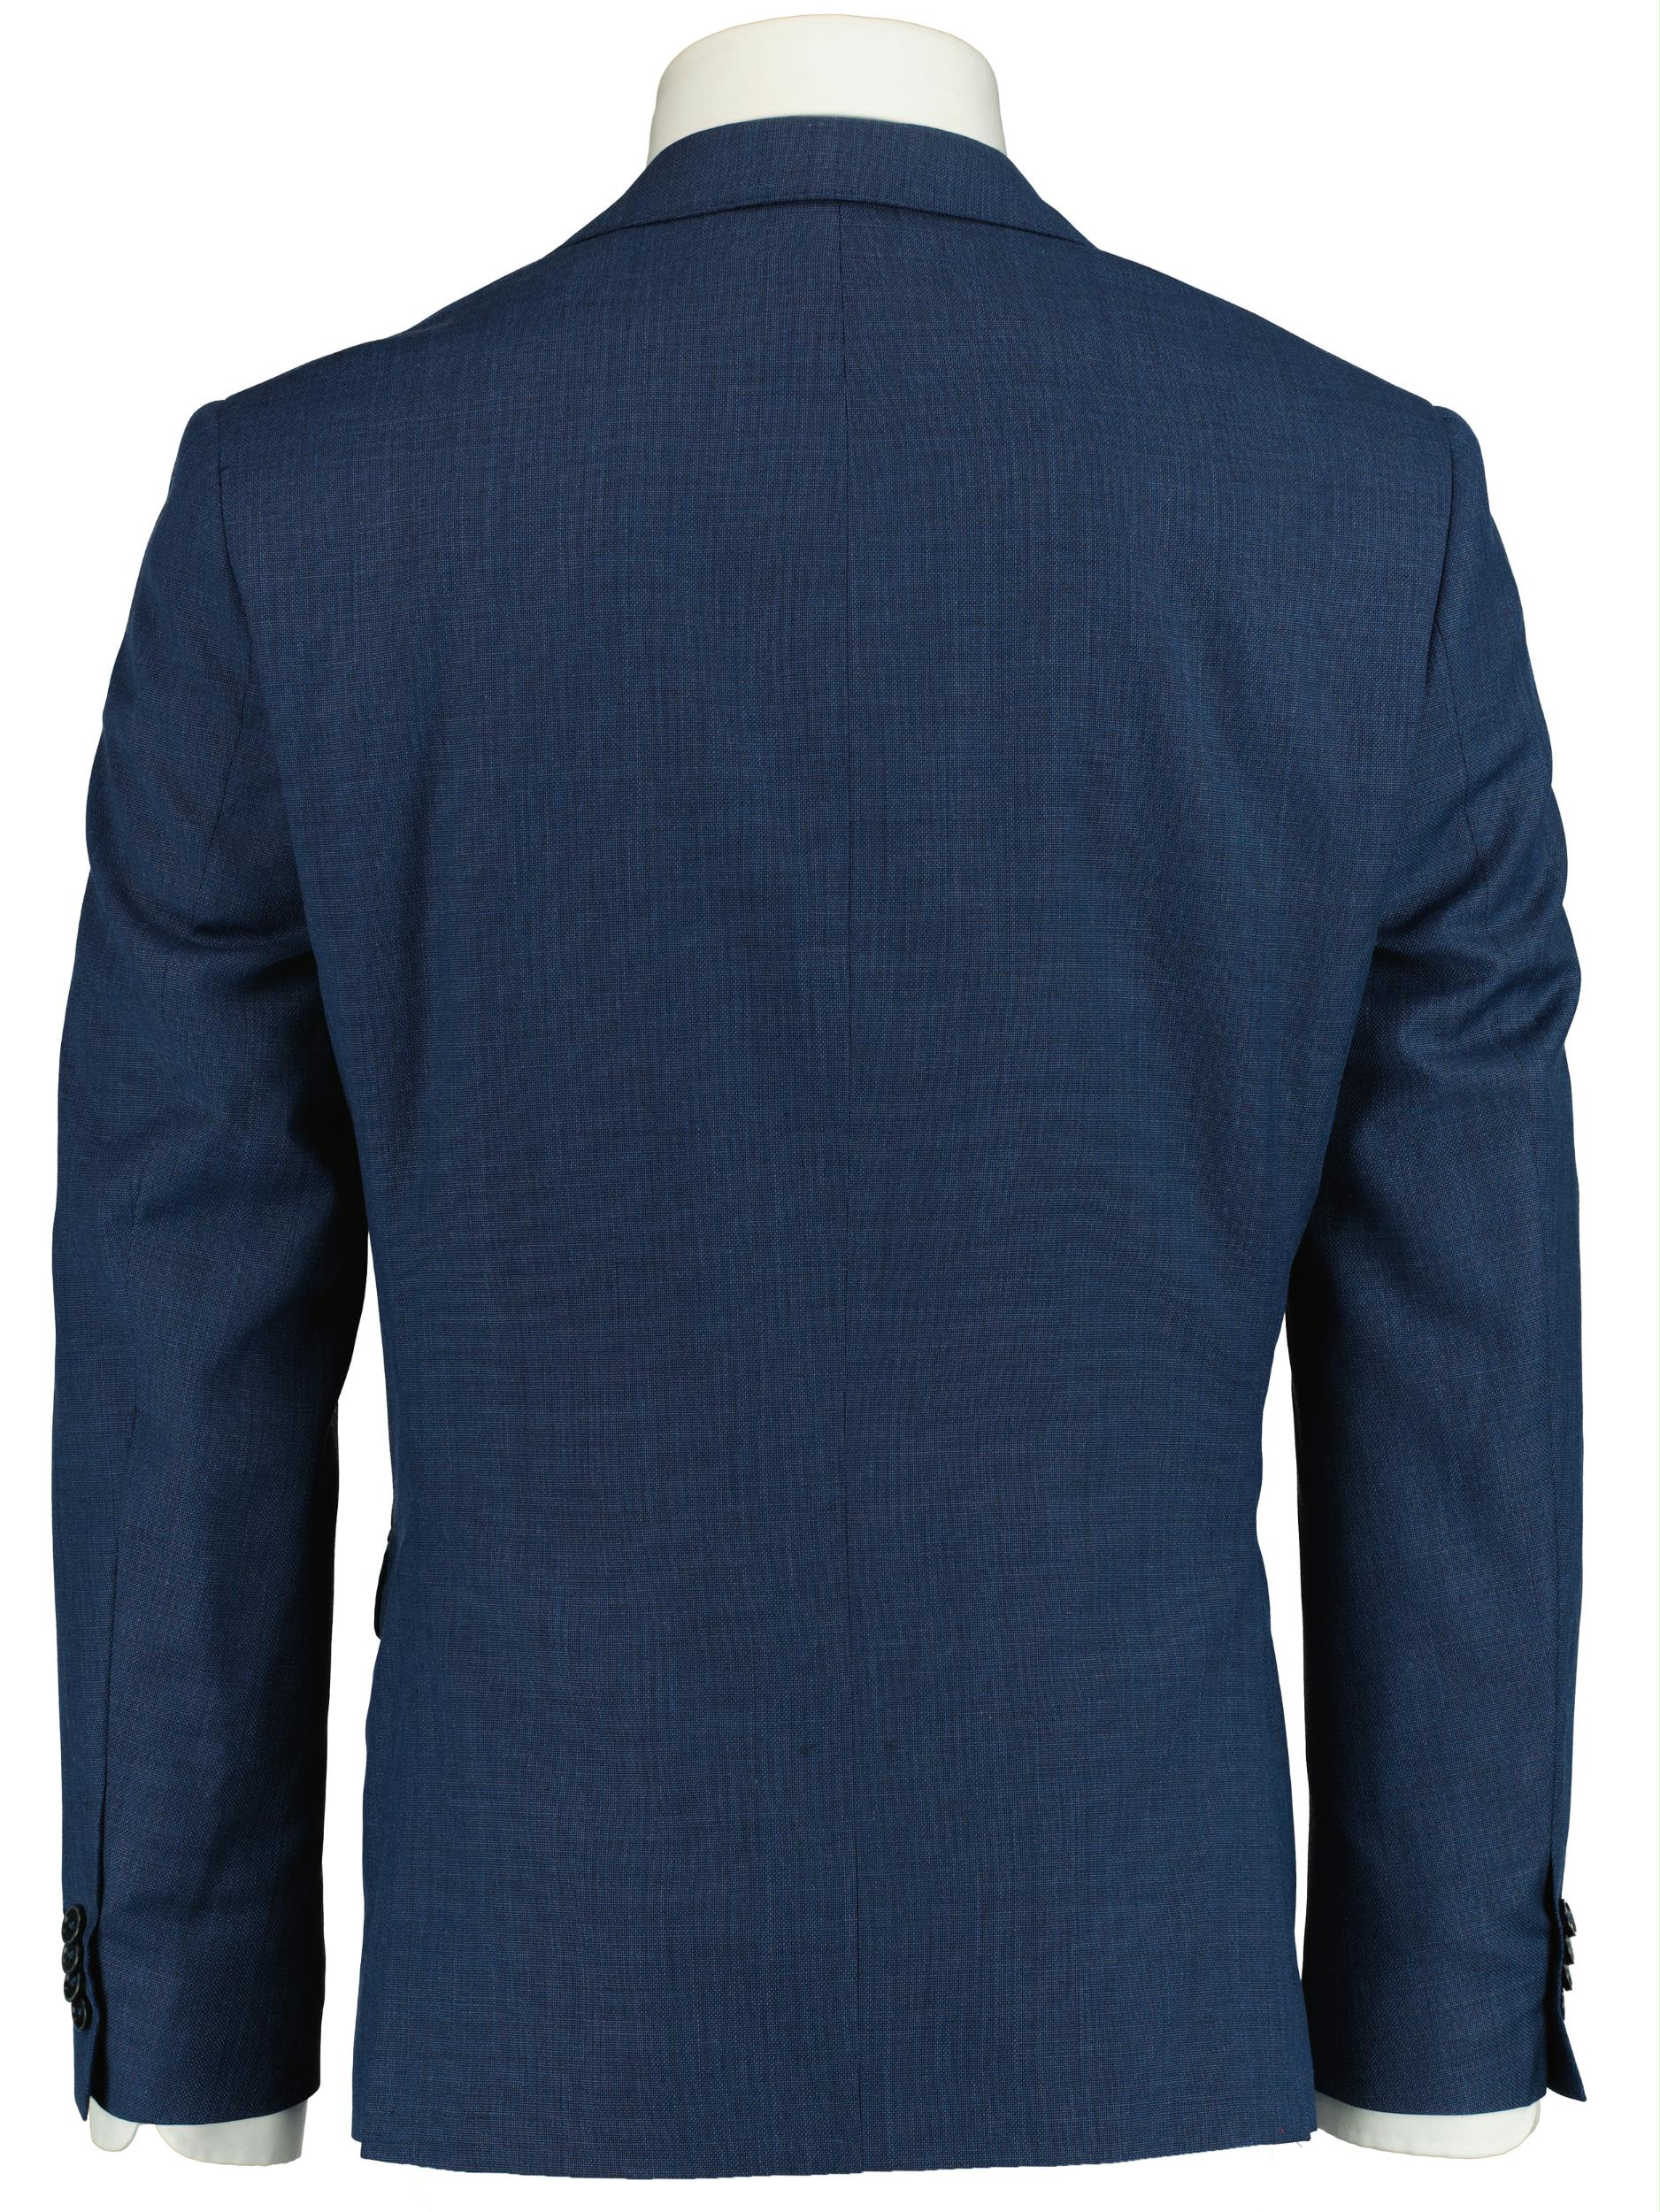 Scotland Blue Kostuum Blauw D7,5 Lyon - 2 Pcs Suit 193027LY34SB/240 blue